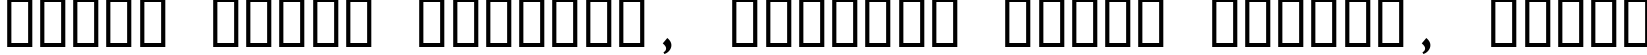 Пример написания шрифтом Rod текста на белорусском